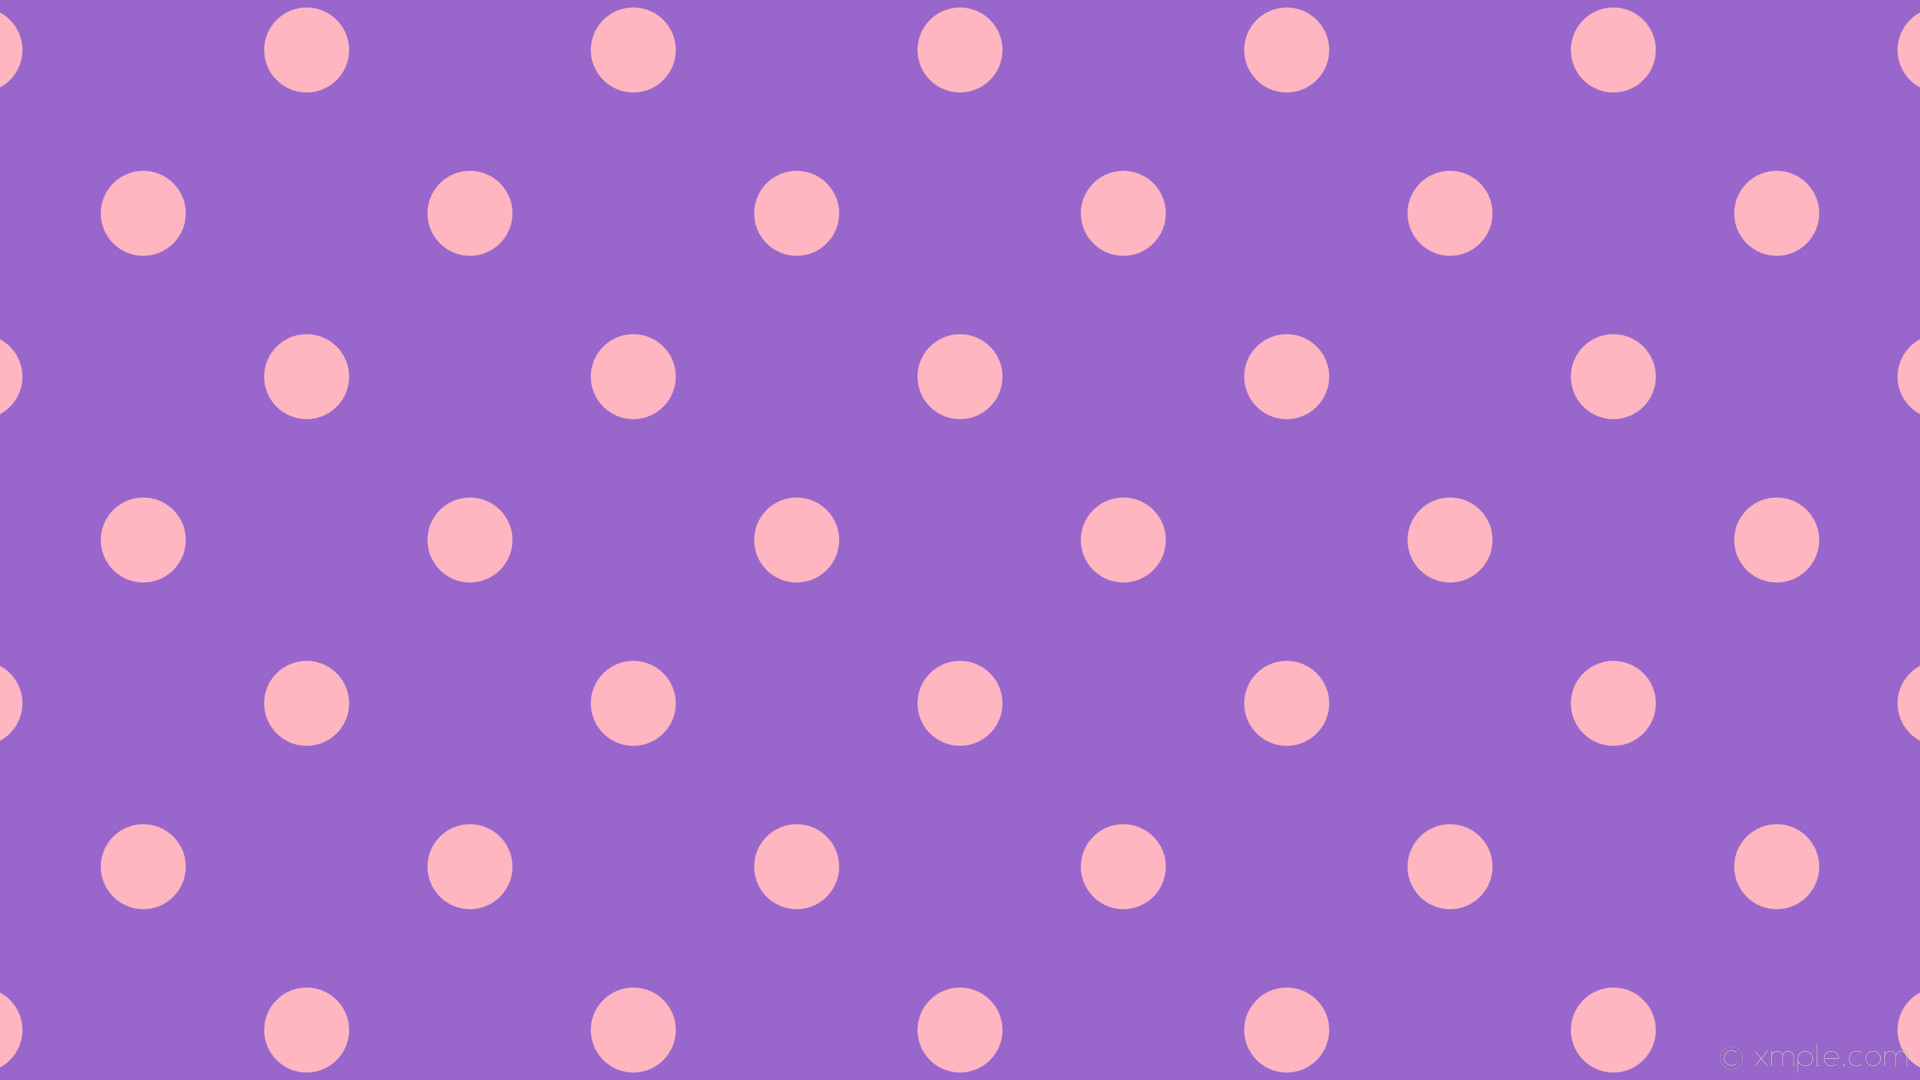 1920x1080 wallpaper purple polka pink dots spots amethyst light pink #9966cc #ffb6c1  225Â° 85px